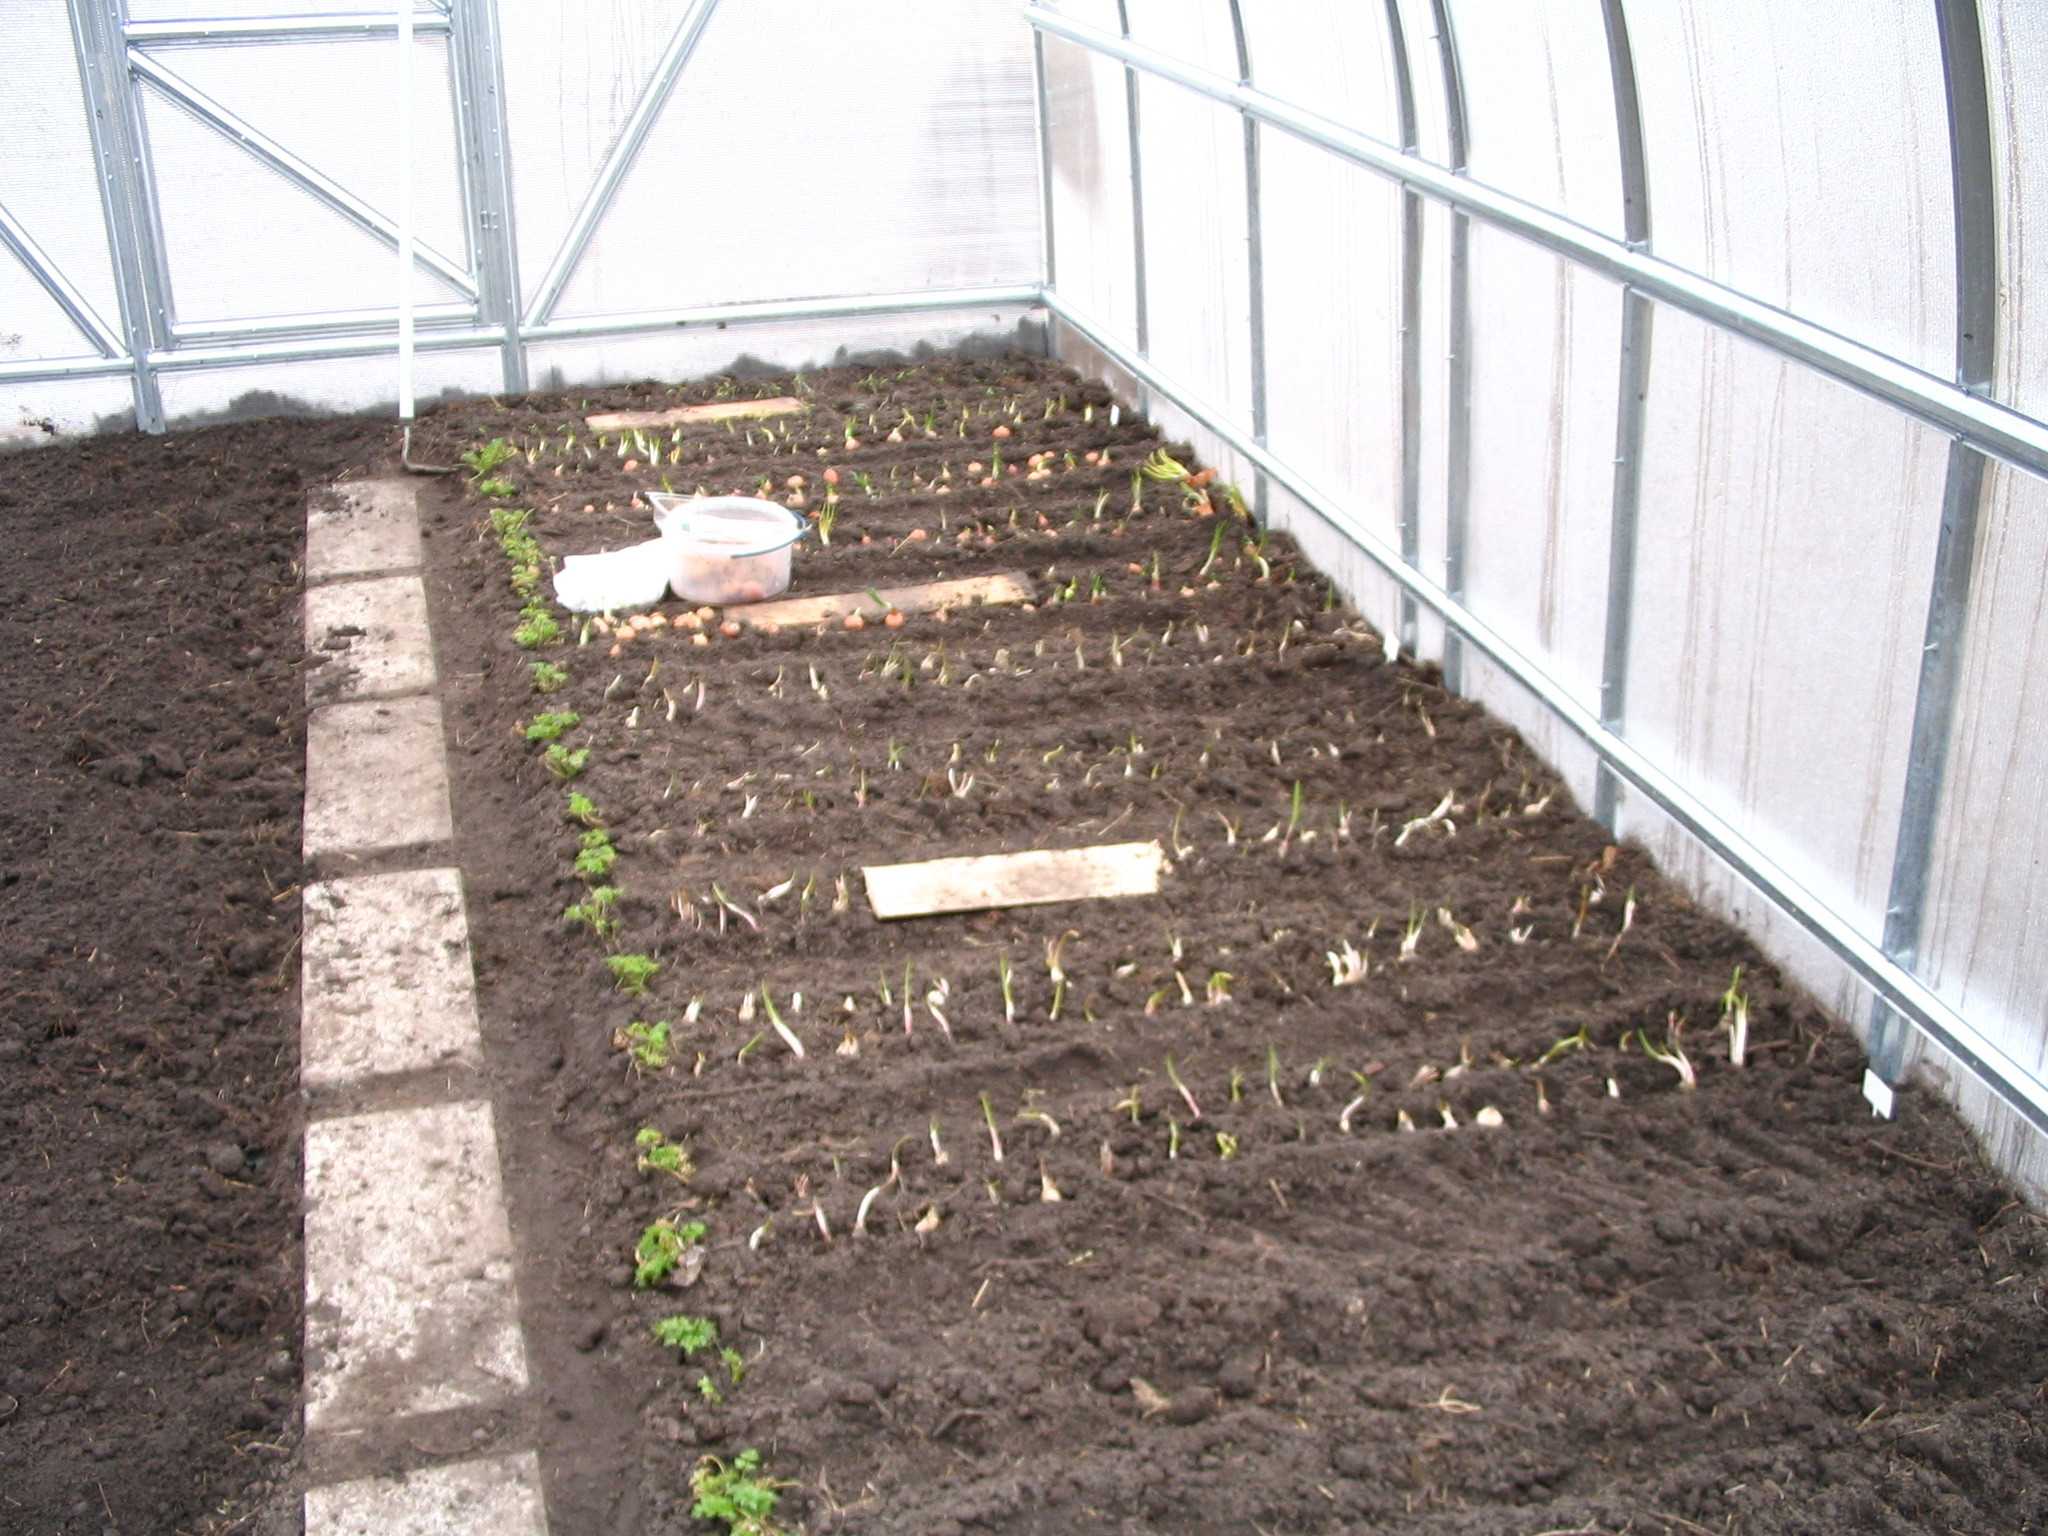 Сорта редиса для теплицы: когда сажать и как вырастить редис в теплице зимой с хорошей урожайностью?